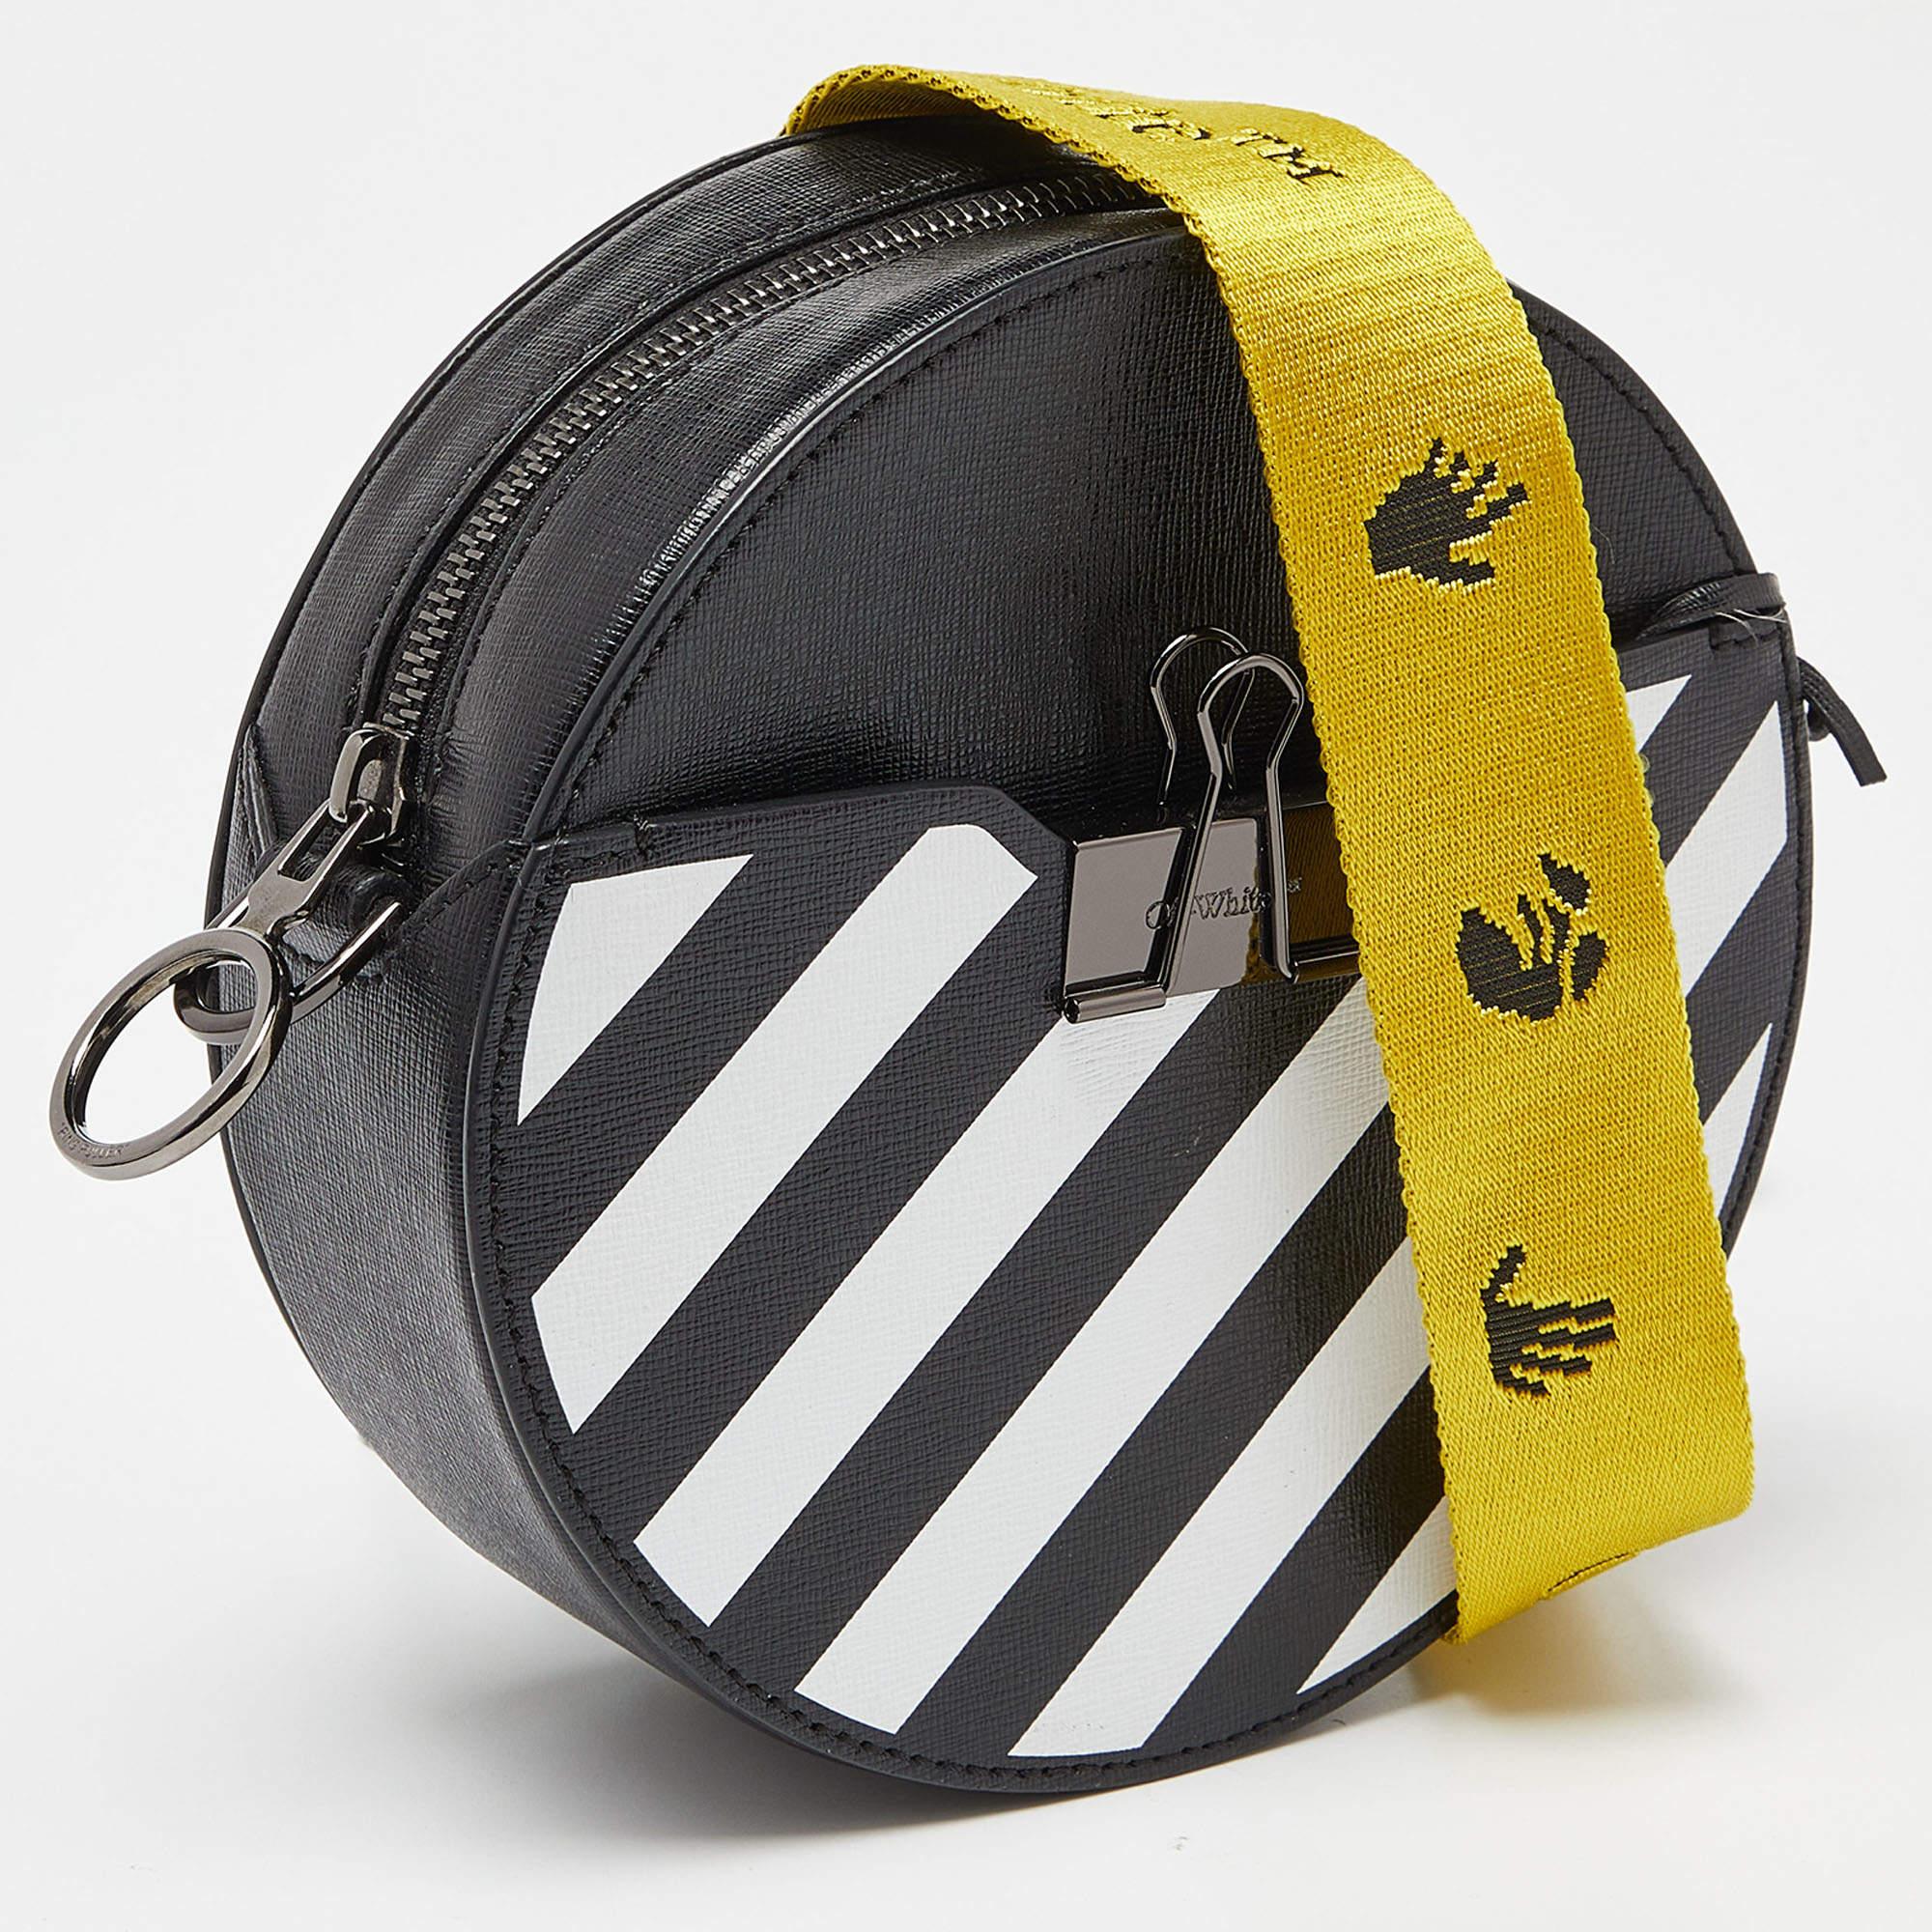 Off-White Black/White Diagonal Striped Leather Round Crossbody Bag 1